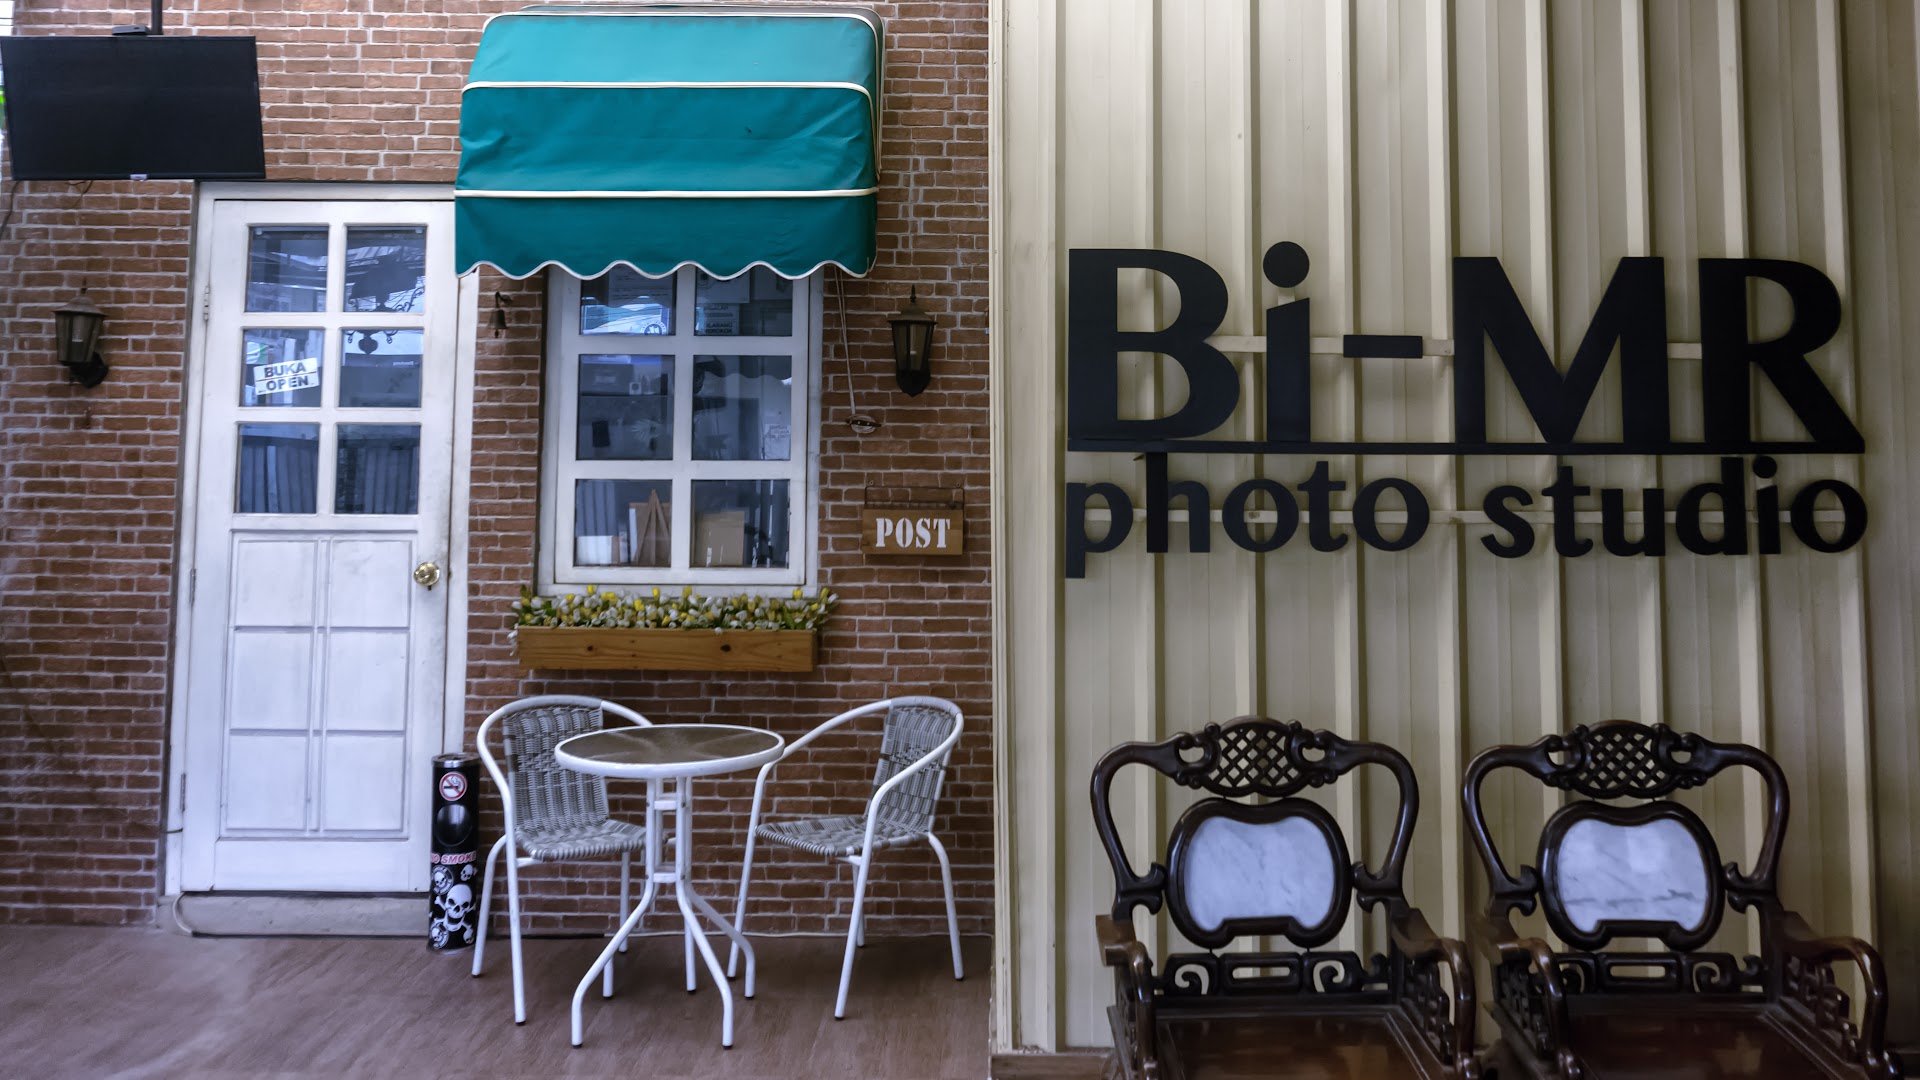 Bi-mr Photo Studio Photo